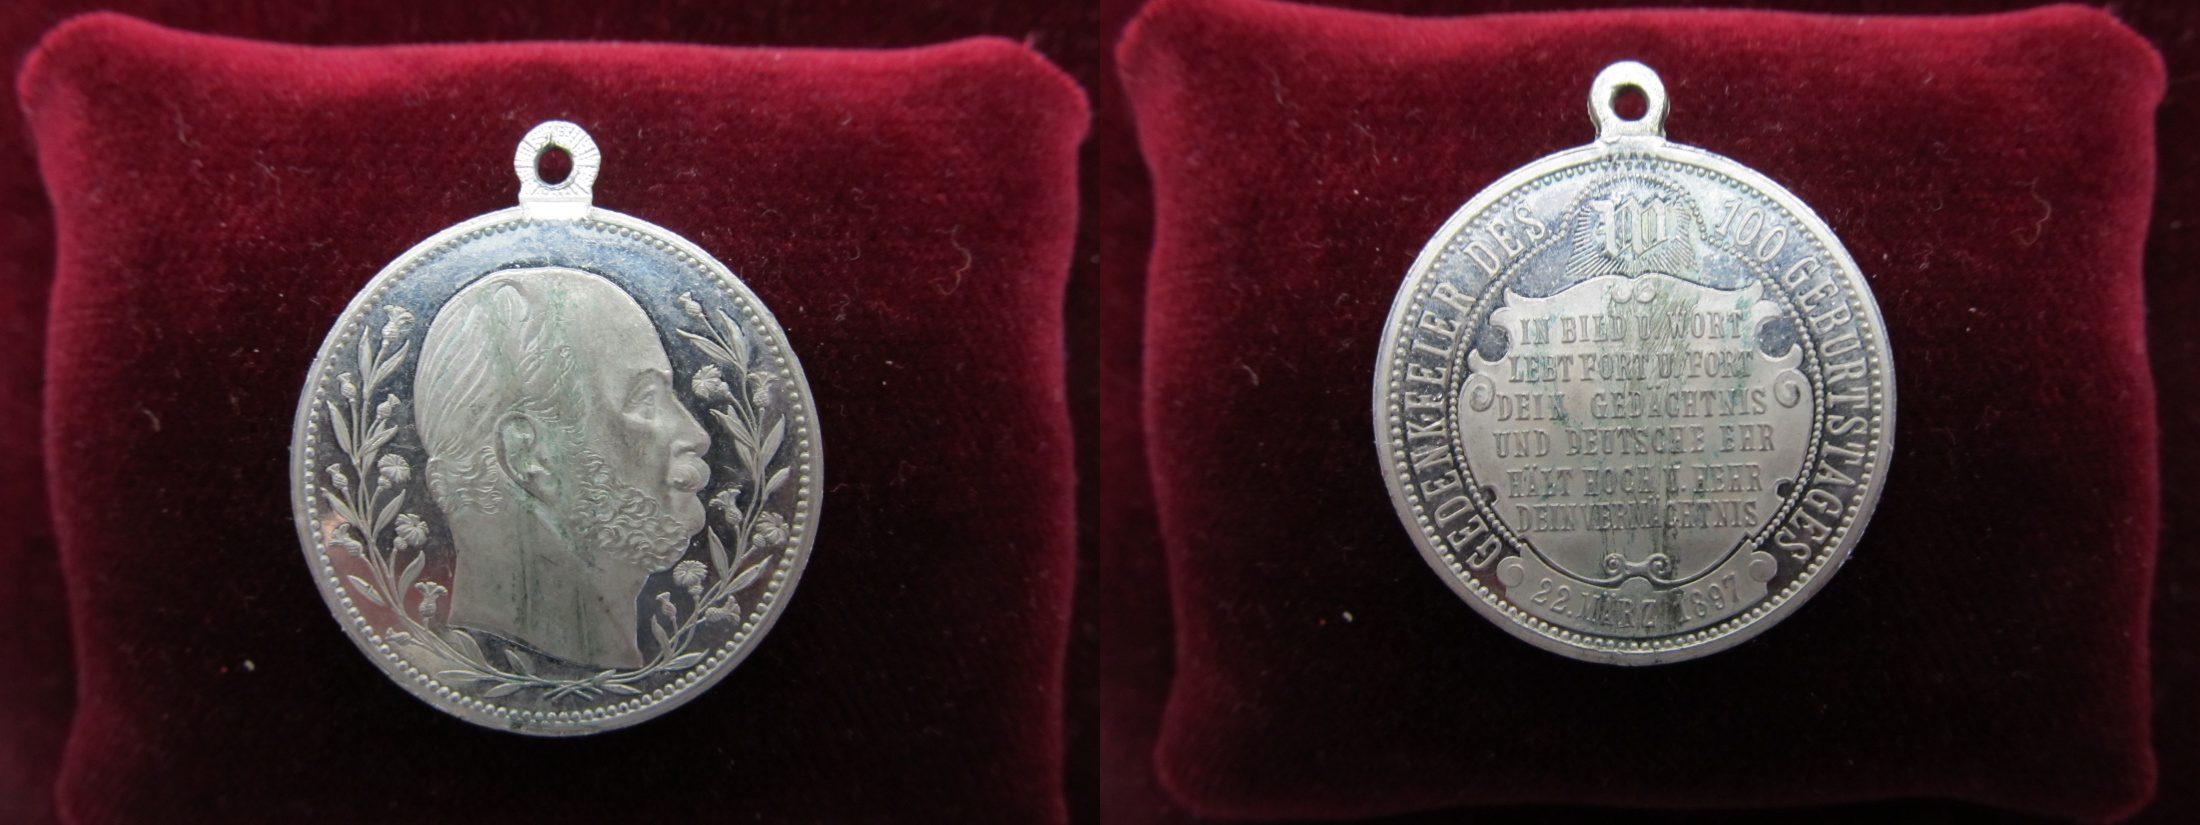 Foto Deutsches Reich Kaiserreich Preussen Versilberte Medaille 1897 foto 937009